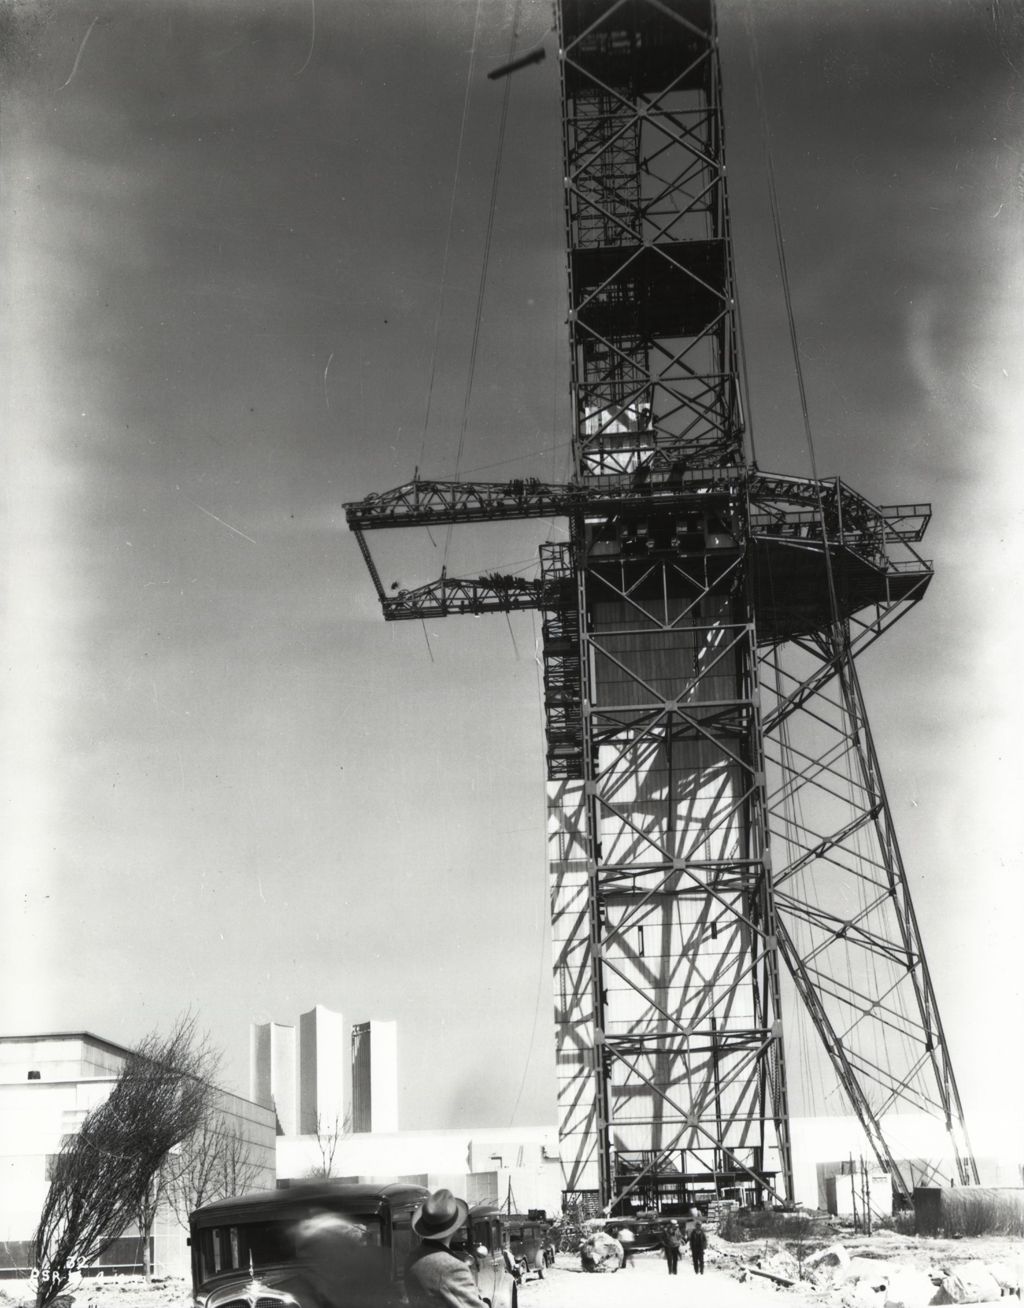 Century of Progress Sky Ride towers